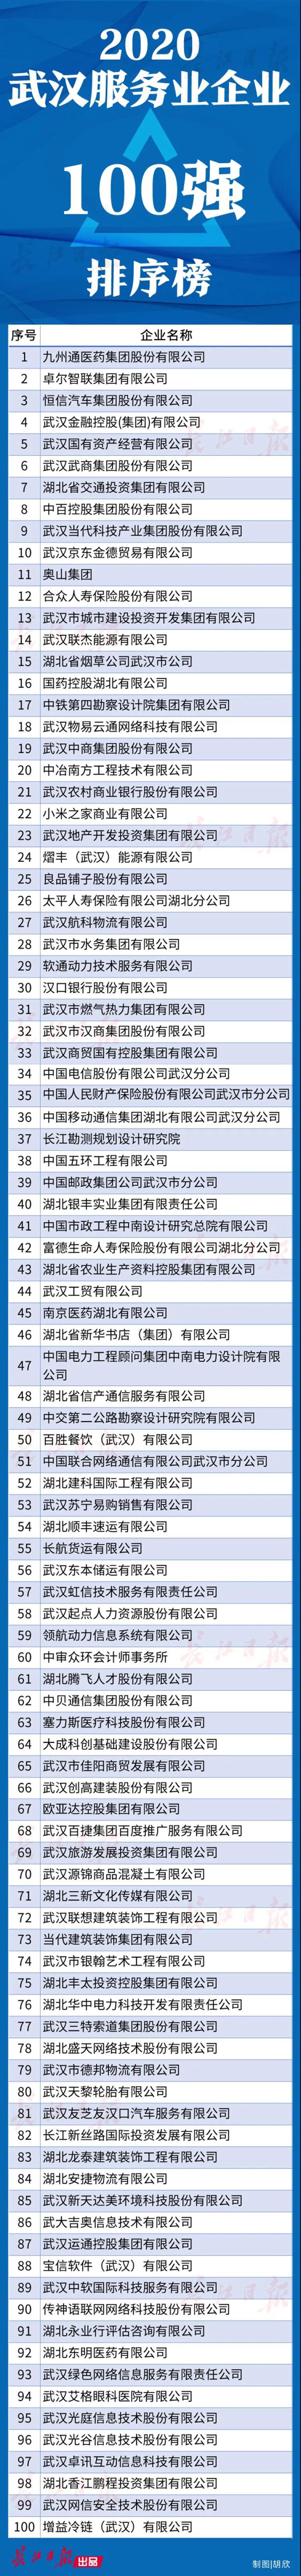 武汉企业100强名单公布！都是领军企业，快来看看有没有你的东家